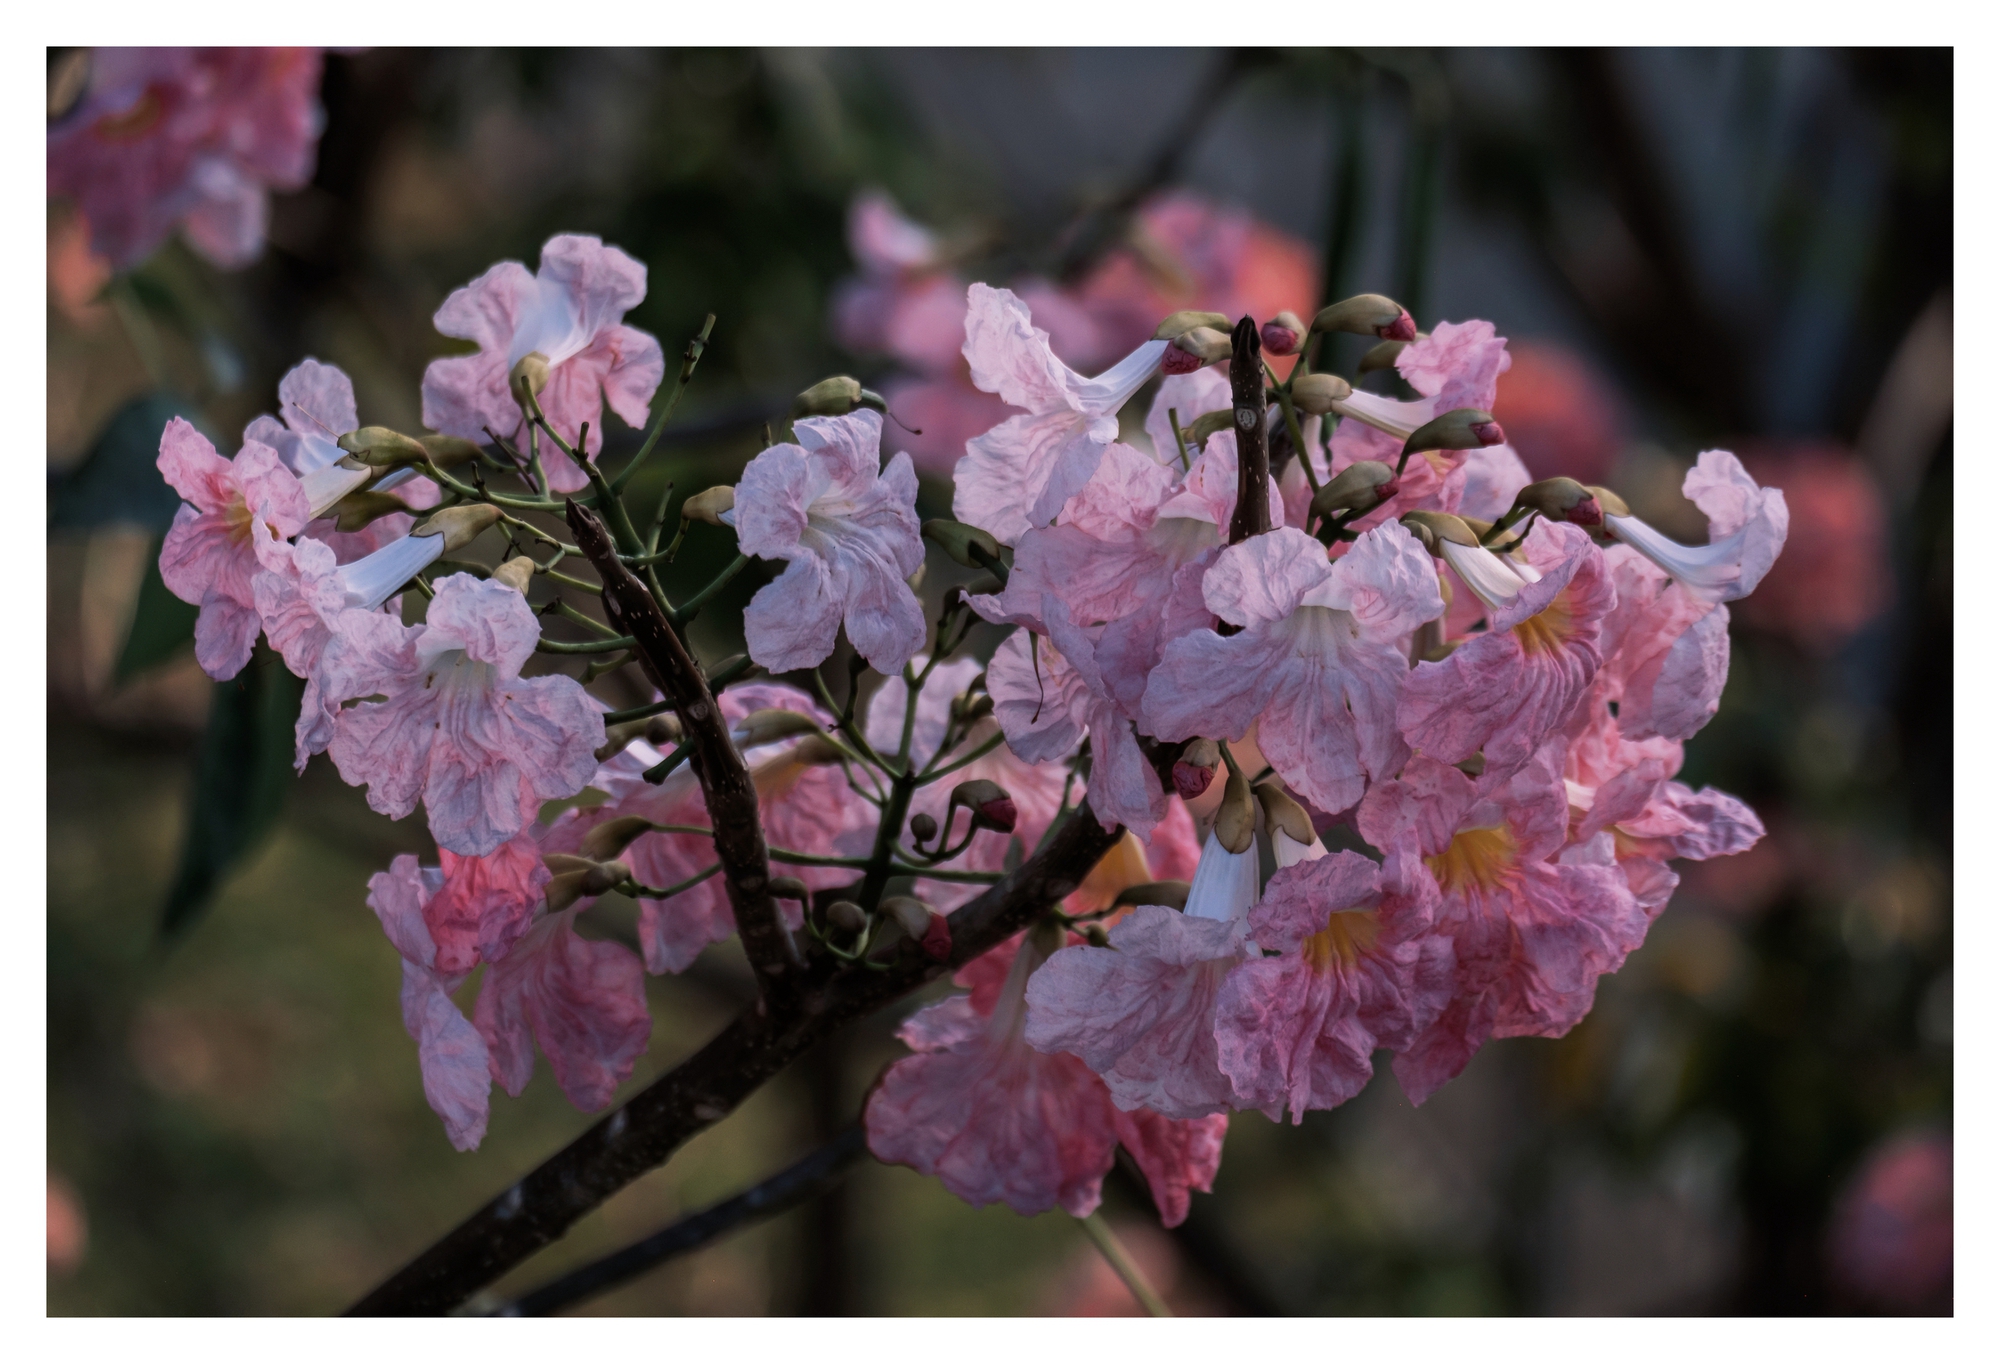 Mùa kèn hồng rợp trời Sài Gòn, chợt thấy thành phố mộng mơ biết bao giữa sắc hoa rực rỡ- Ảnh 16.